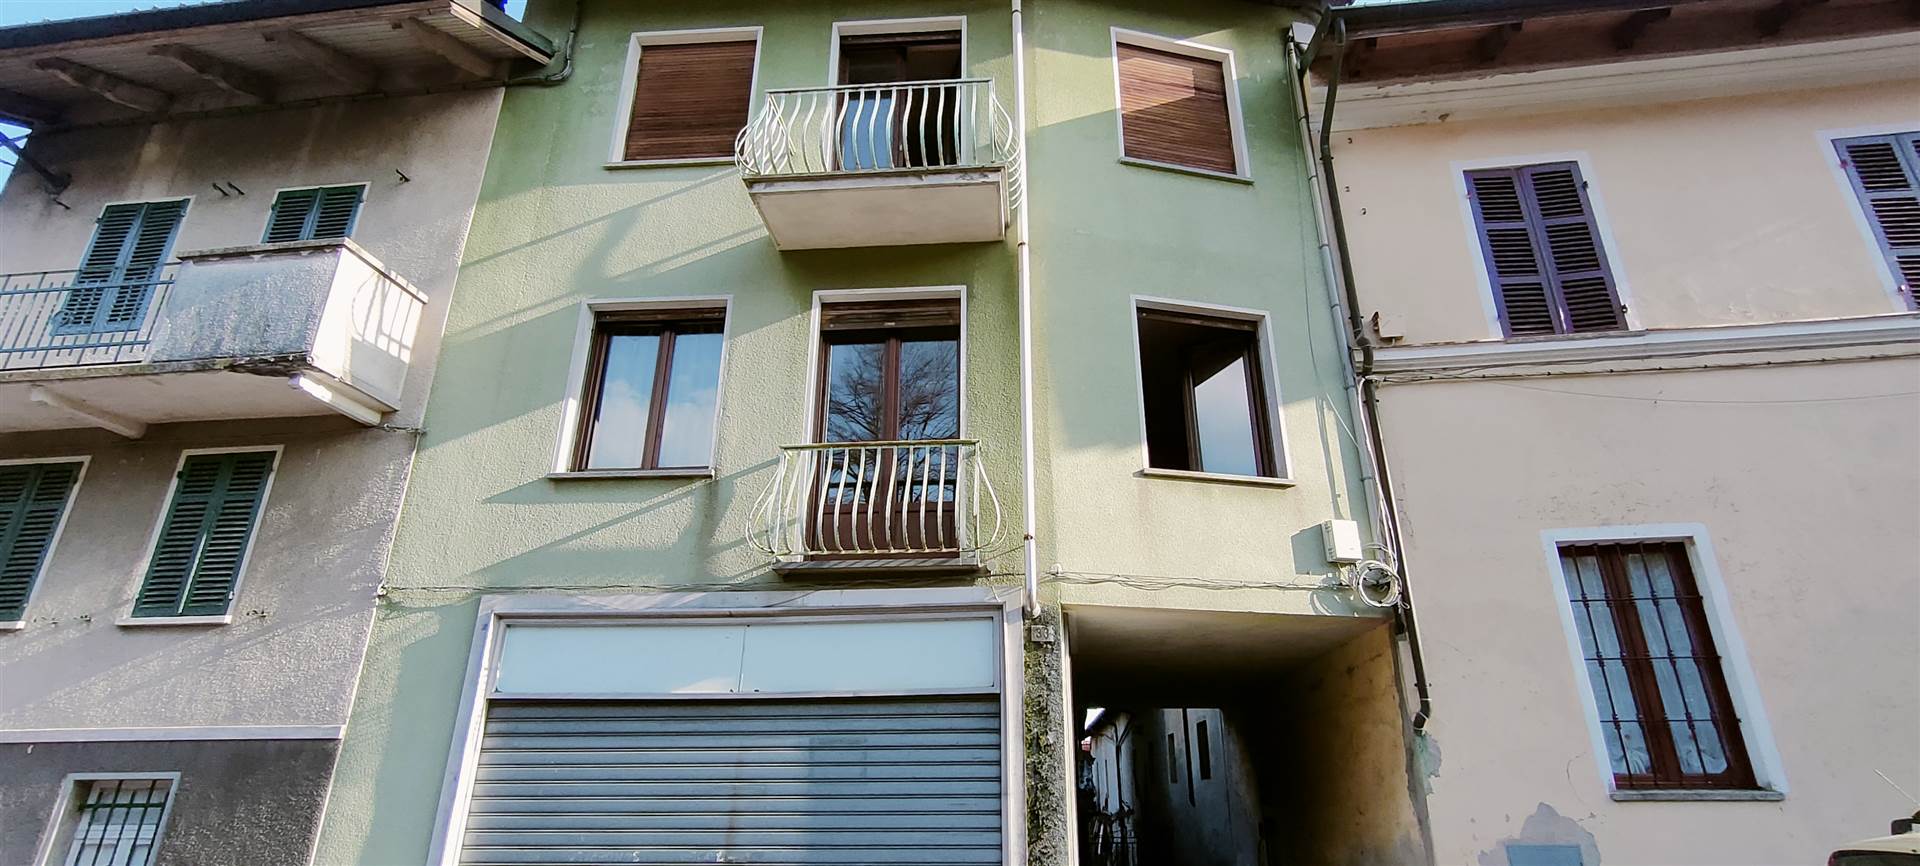 Appartamento in vendita a Sordevolo, 5 locali, prezzo € 29.000 | PortaleAgenzieImmobiliari.it